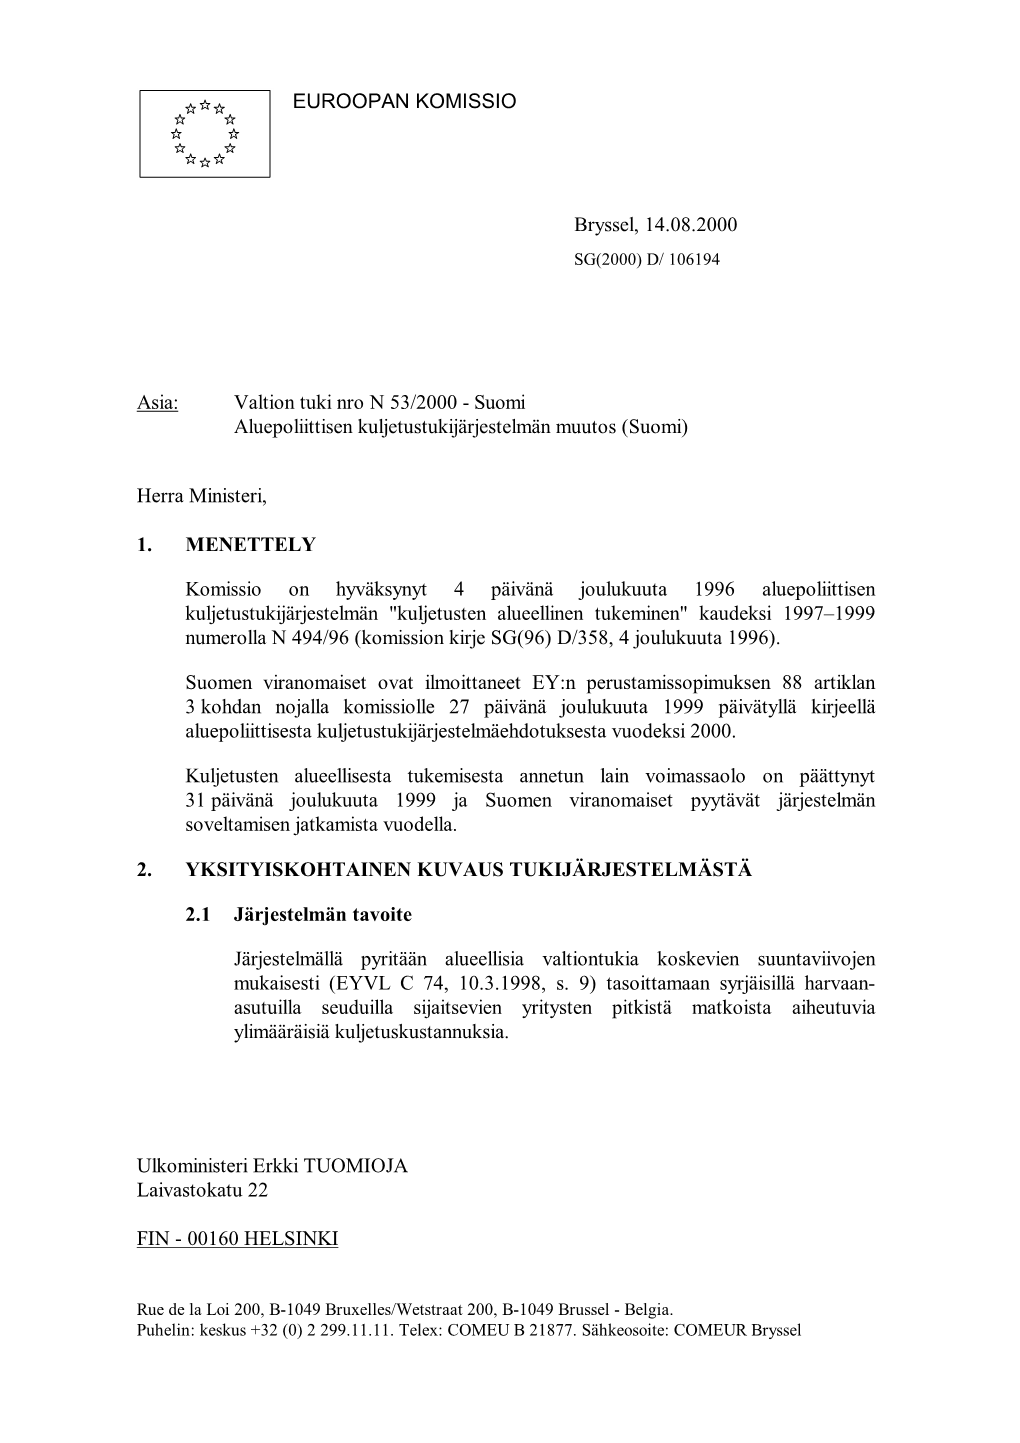 Valtion Tuki Nro N 53/2000 - Suomi Aluepoliittisen Kuljetustukijärjestelmän Muutos (Suomi)